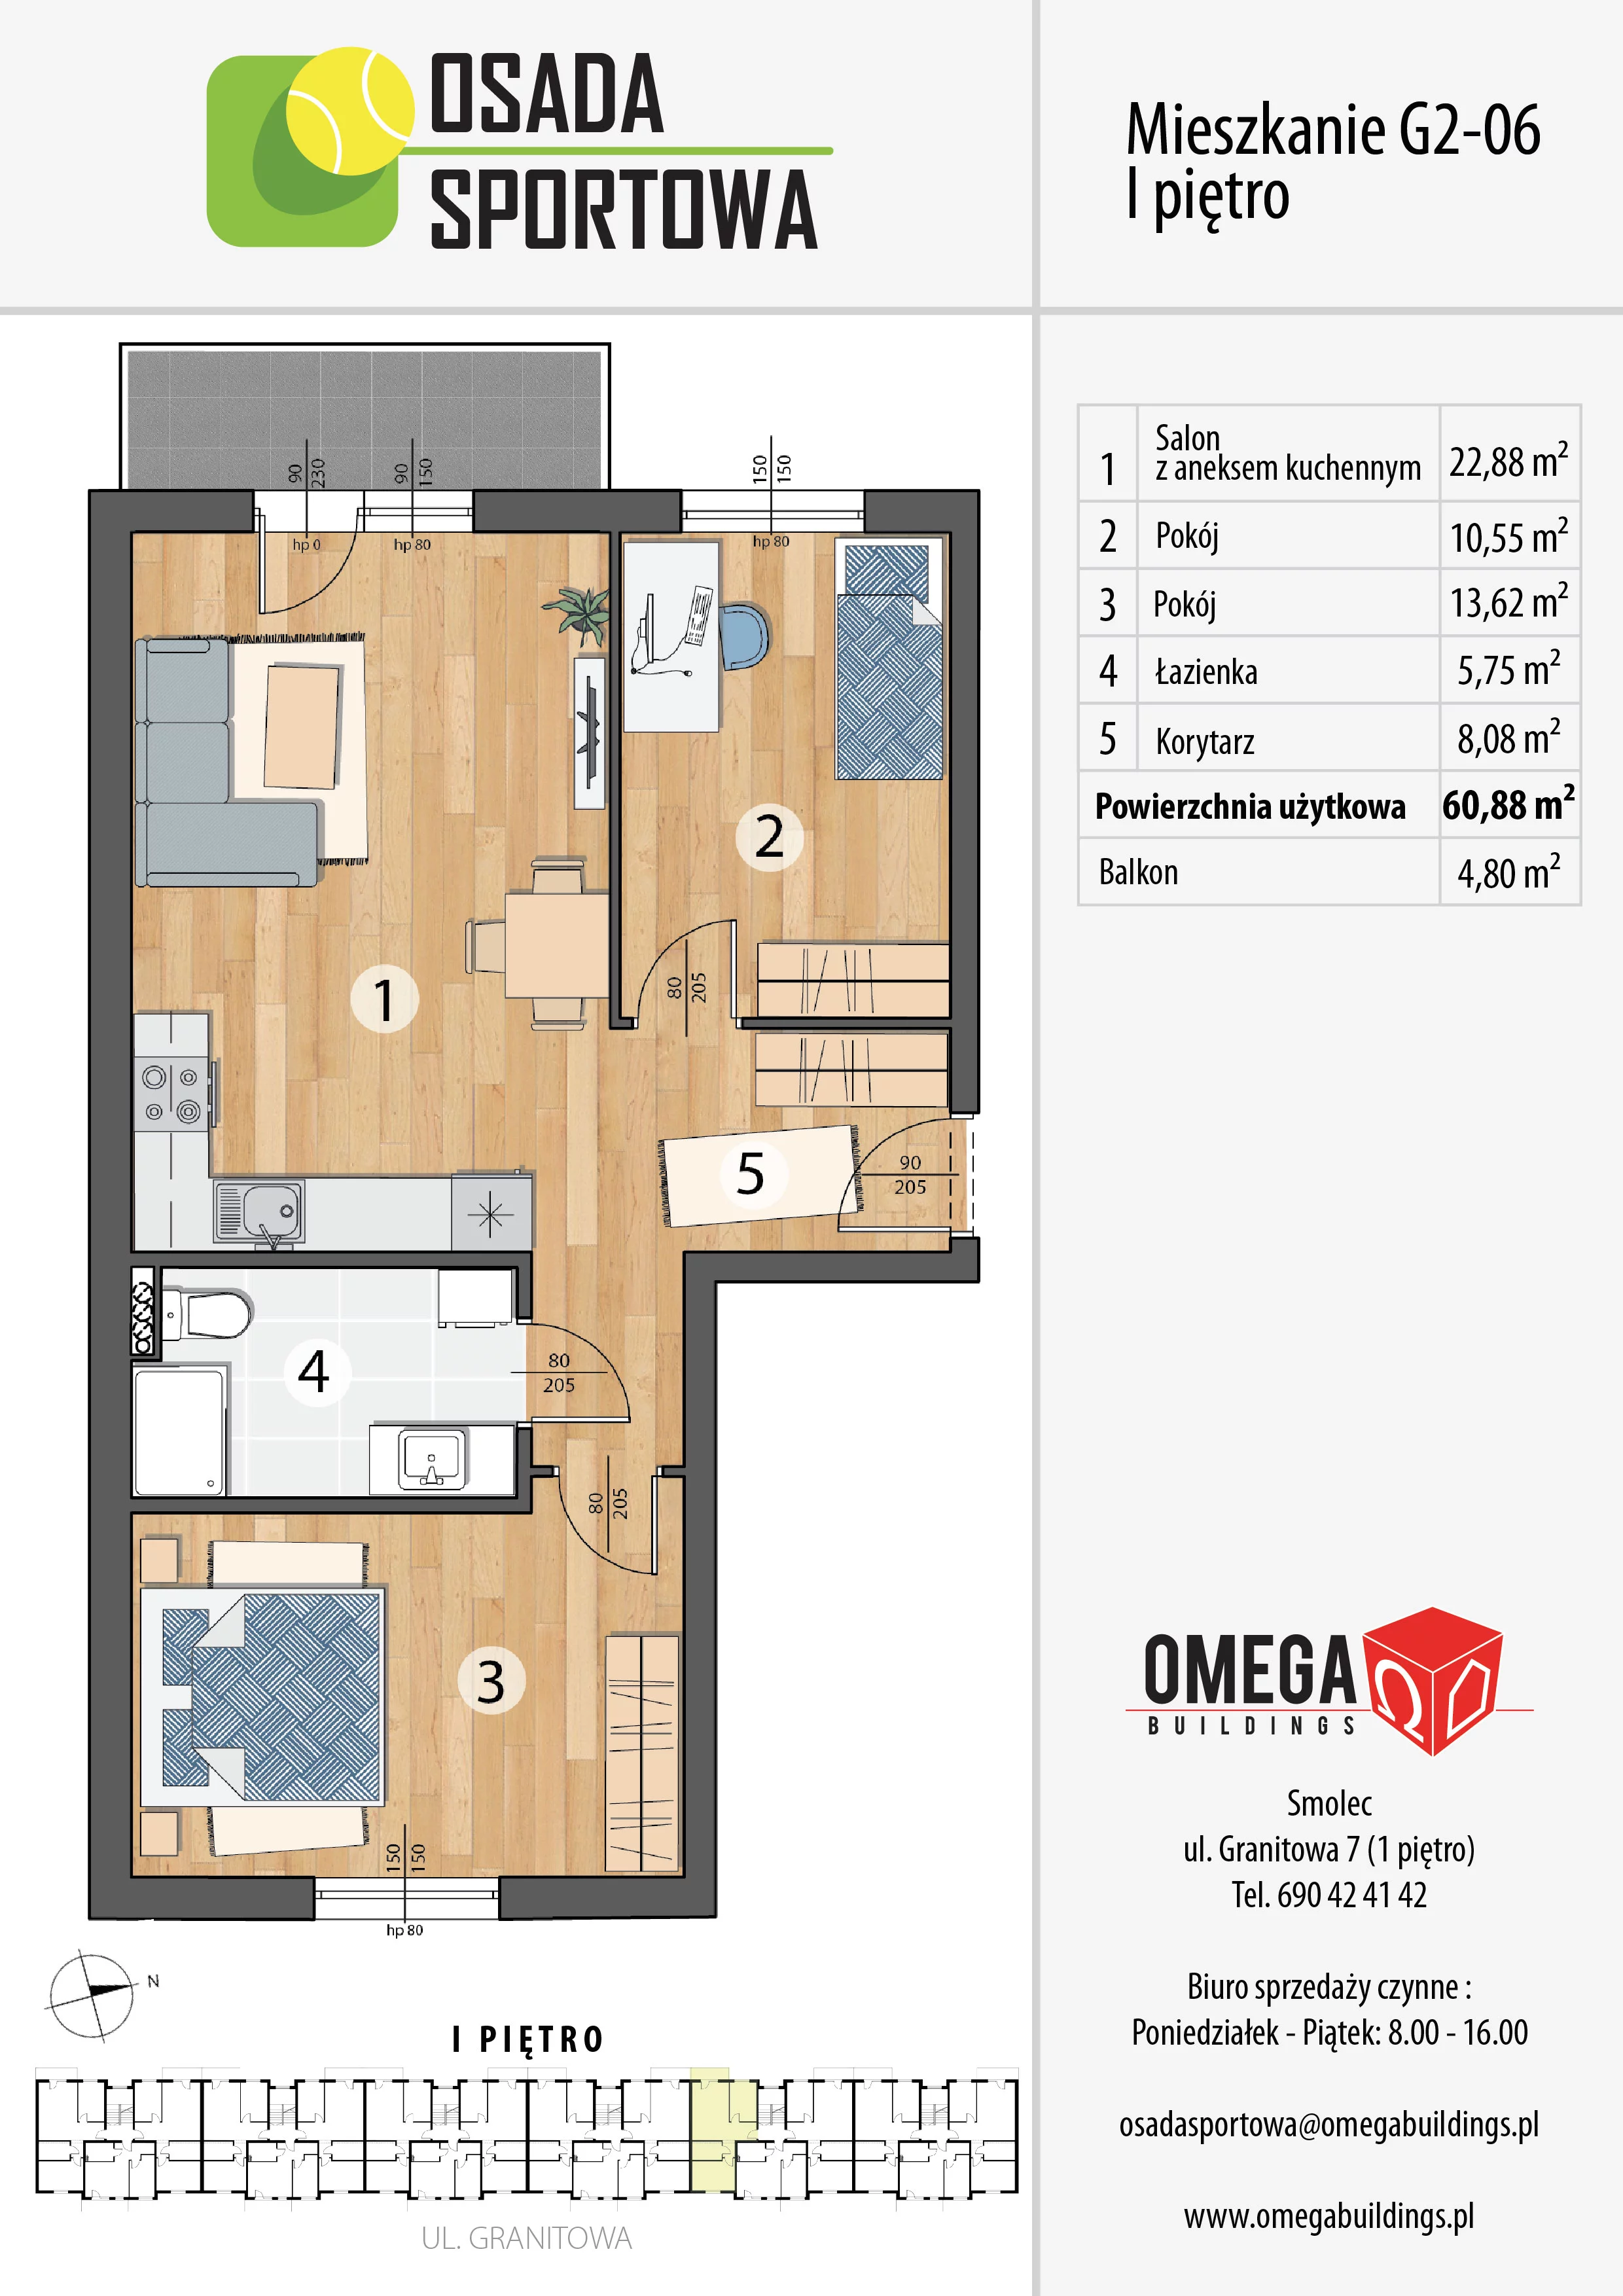 Mieszkanie 60,88 m², piętro 1, oferta nr G2-06, Osada Sportowa Budynek G, Smolec, ul. Granitowa 52-62